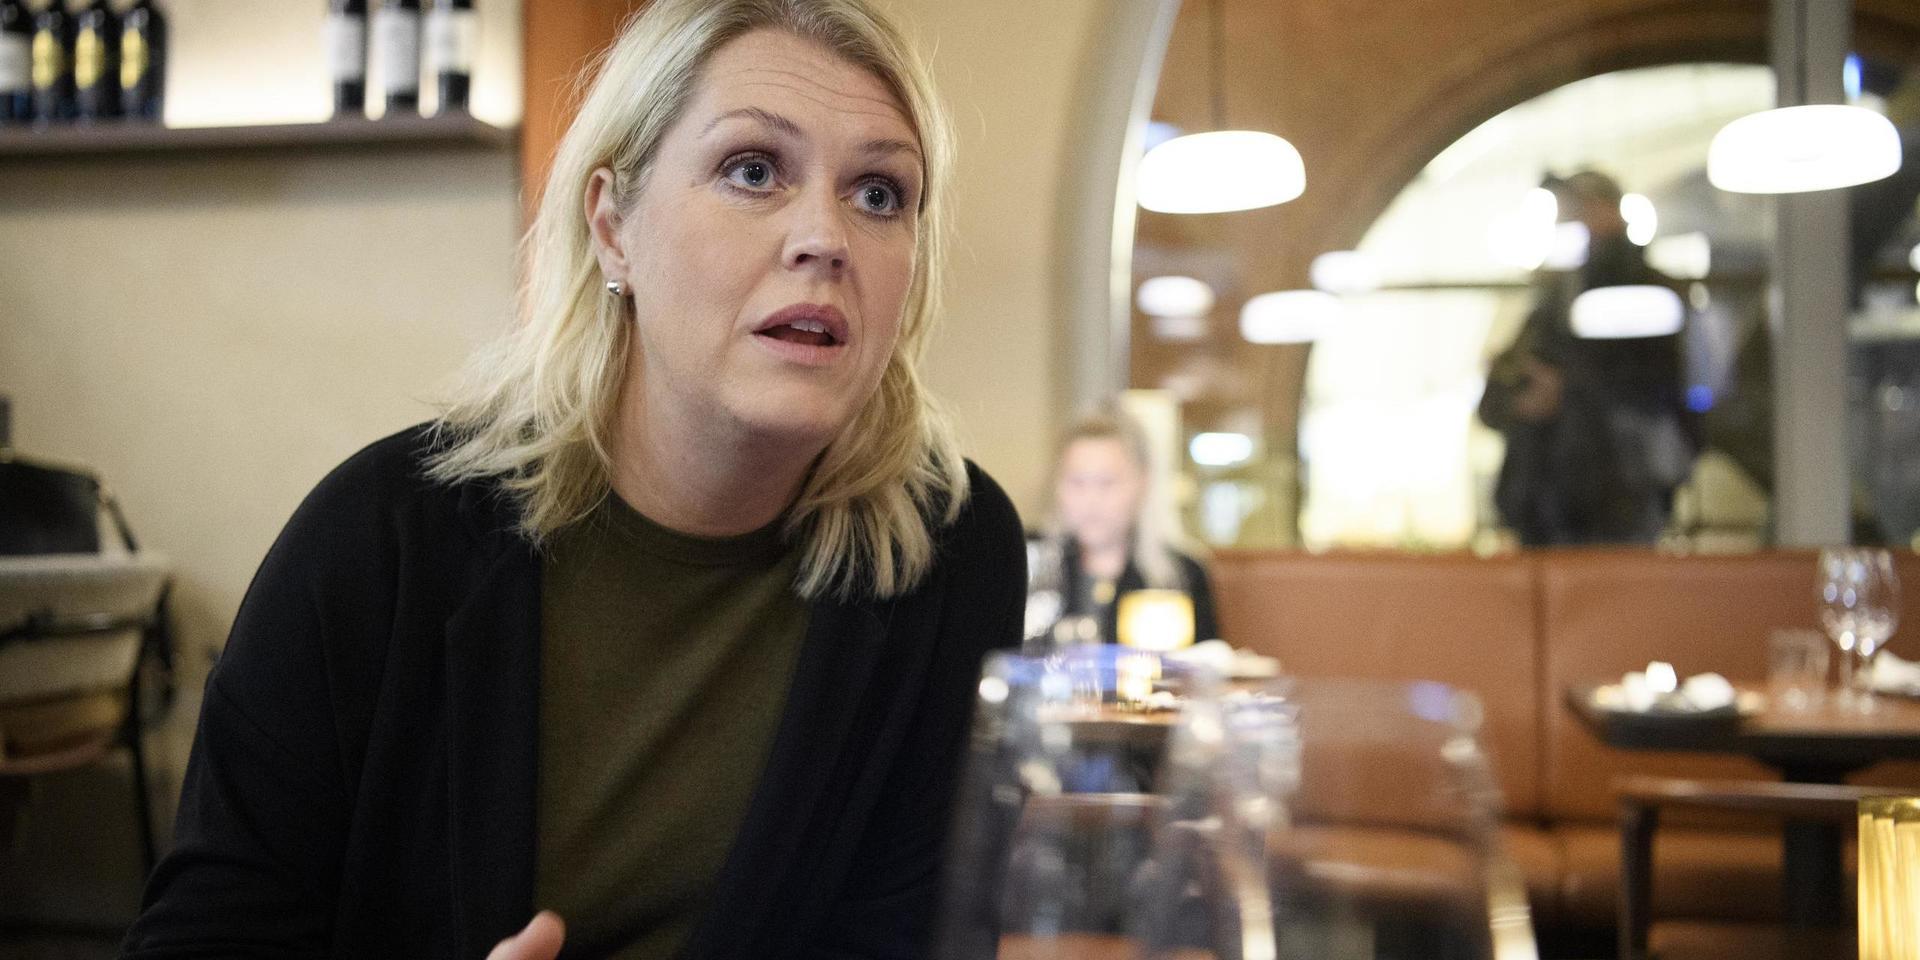 — Jag tycker att man ska känna att man vågar besöka restauranger som sköter sig, säger socialminister Lena Hallengren i samband med en inspektion på en restaurang i Stockholm.